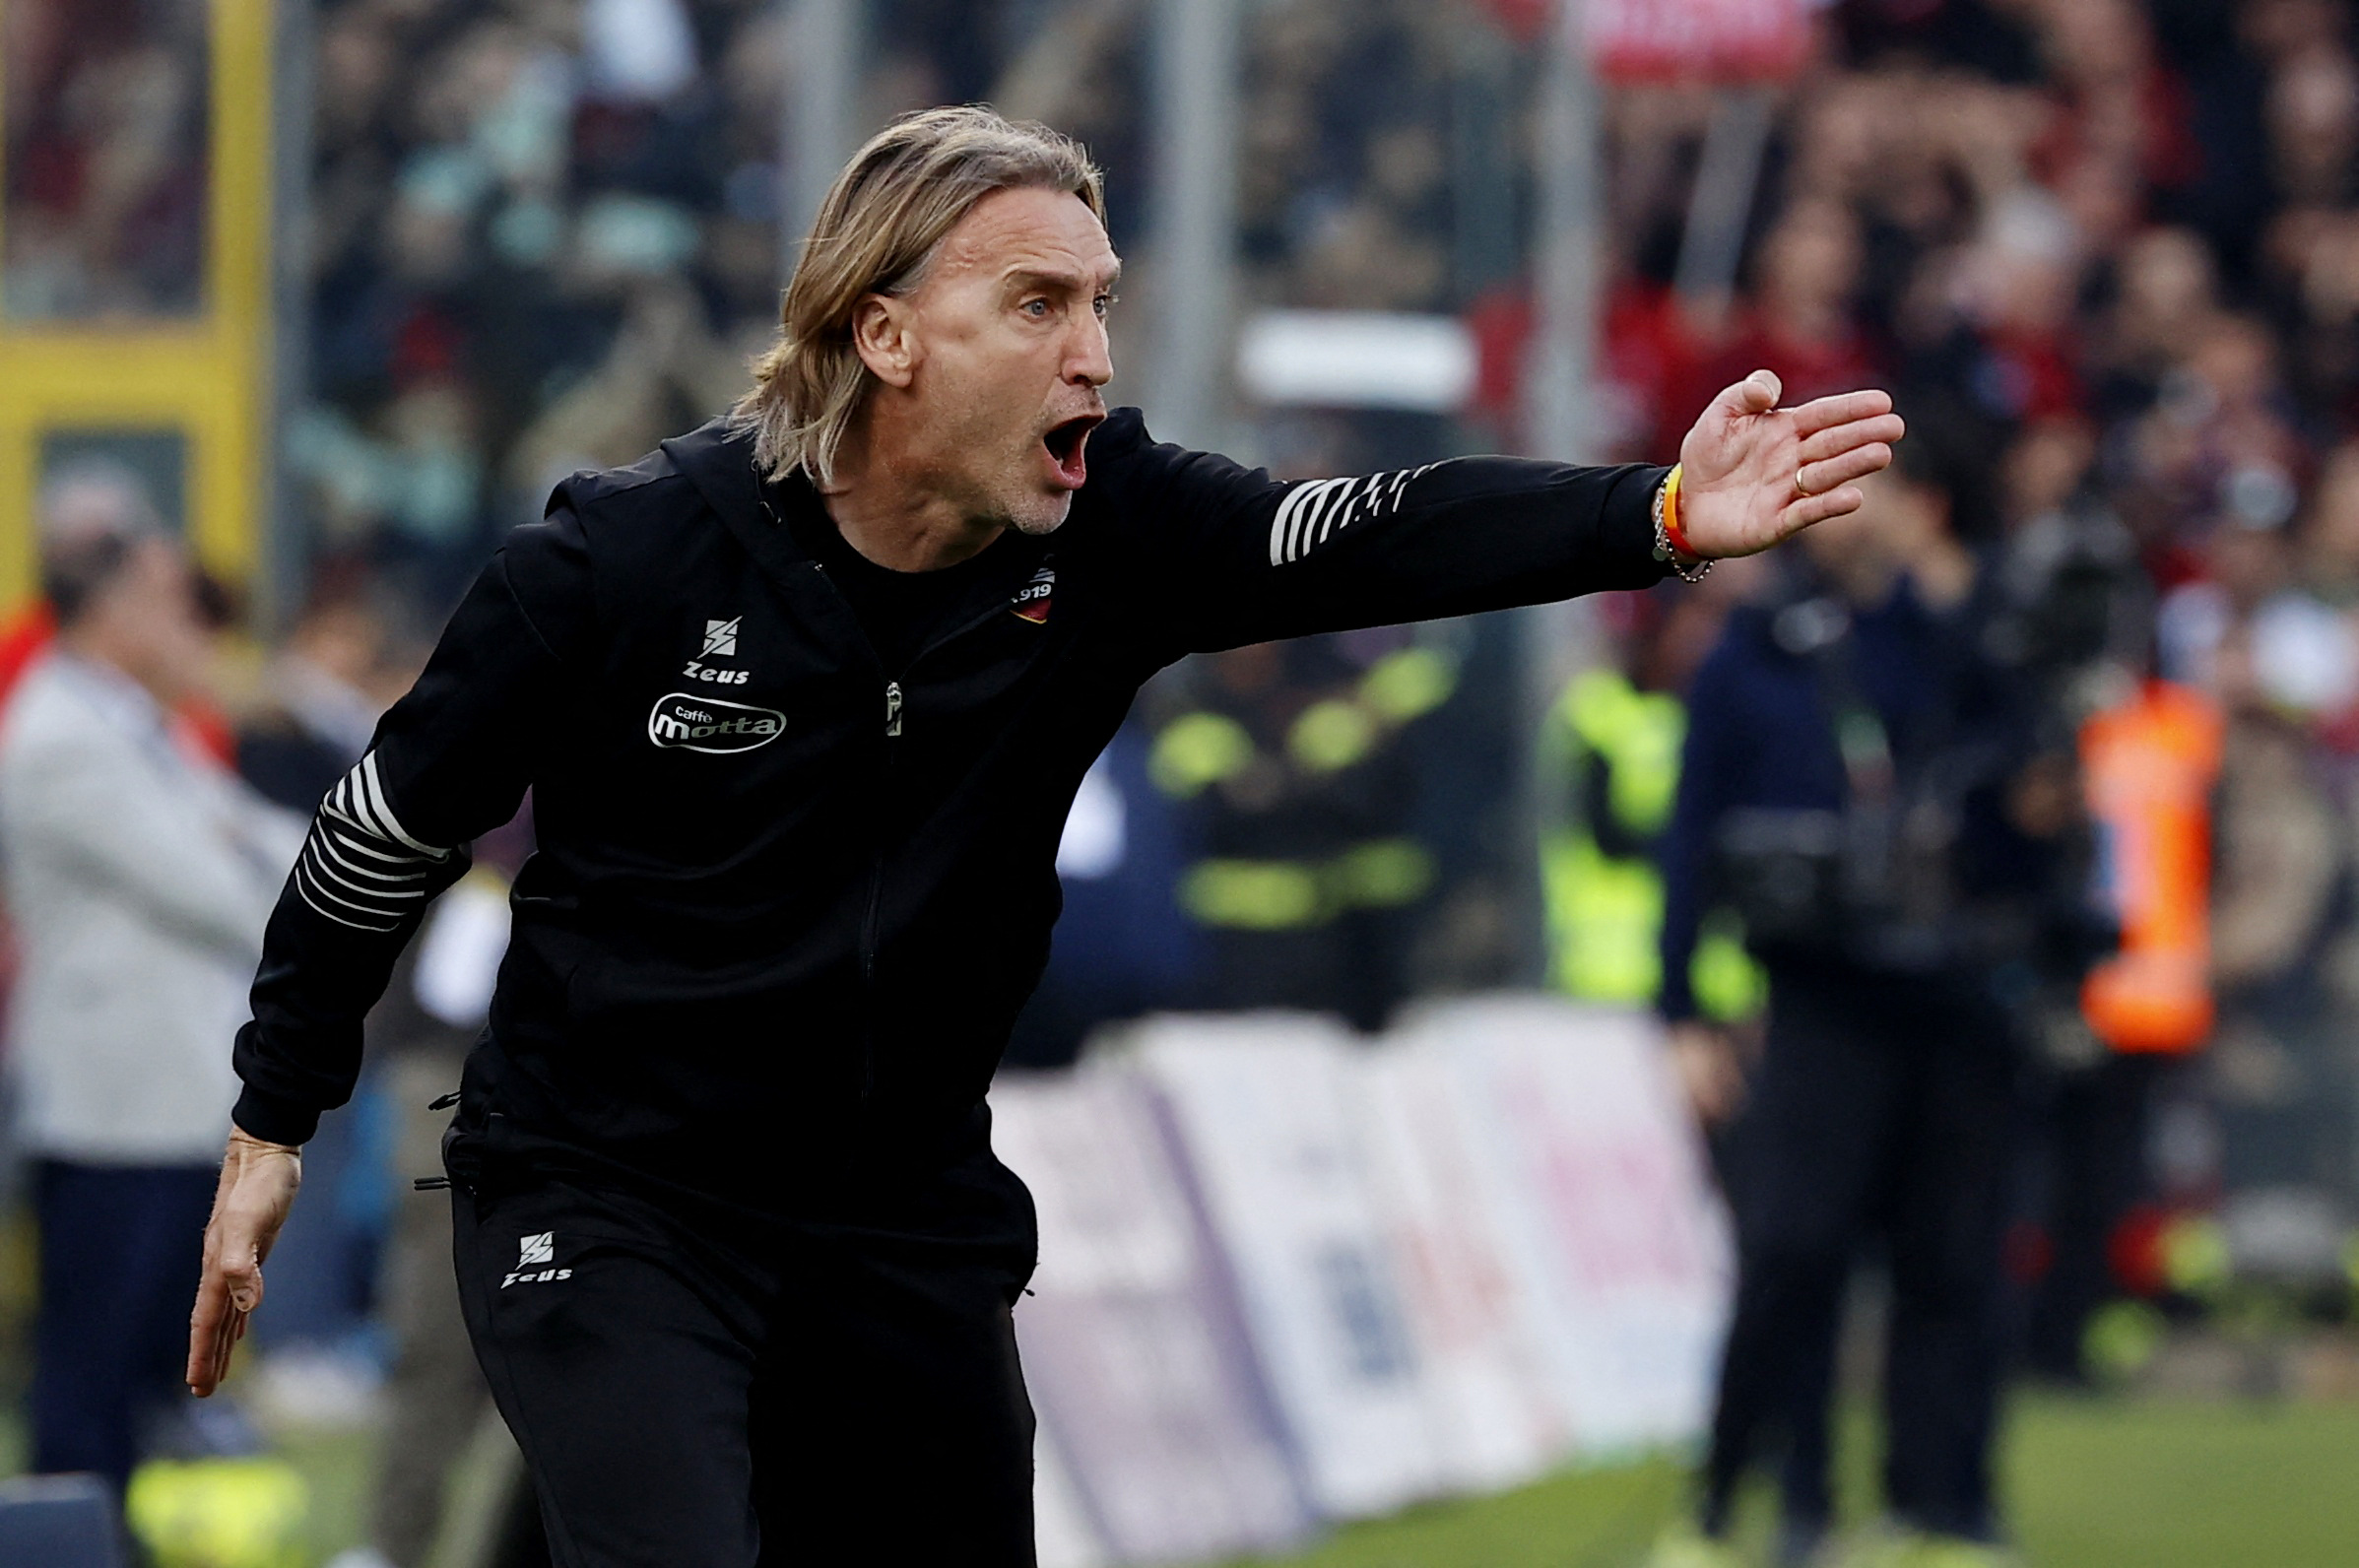 Η Σαλερνιτάνα της Serie A προσέλαβε ξανά τον προπονητή της δύο μέρες μετά την απόλυσή του